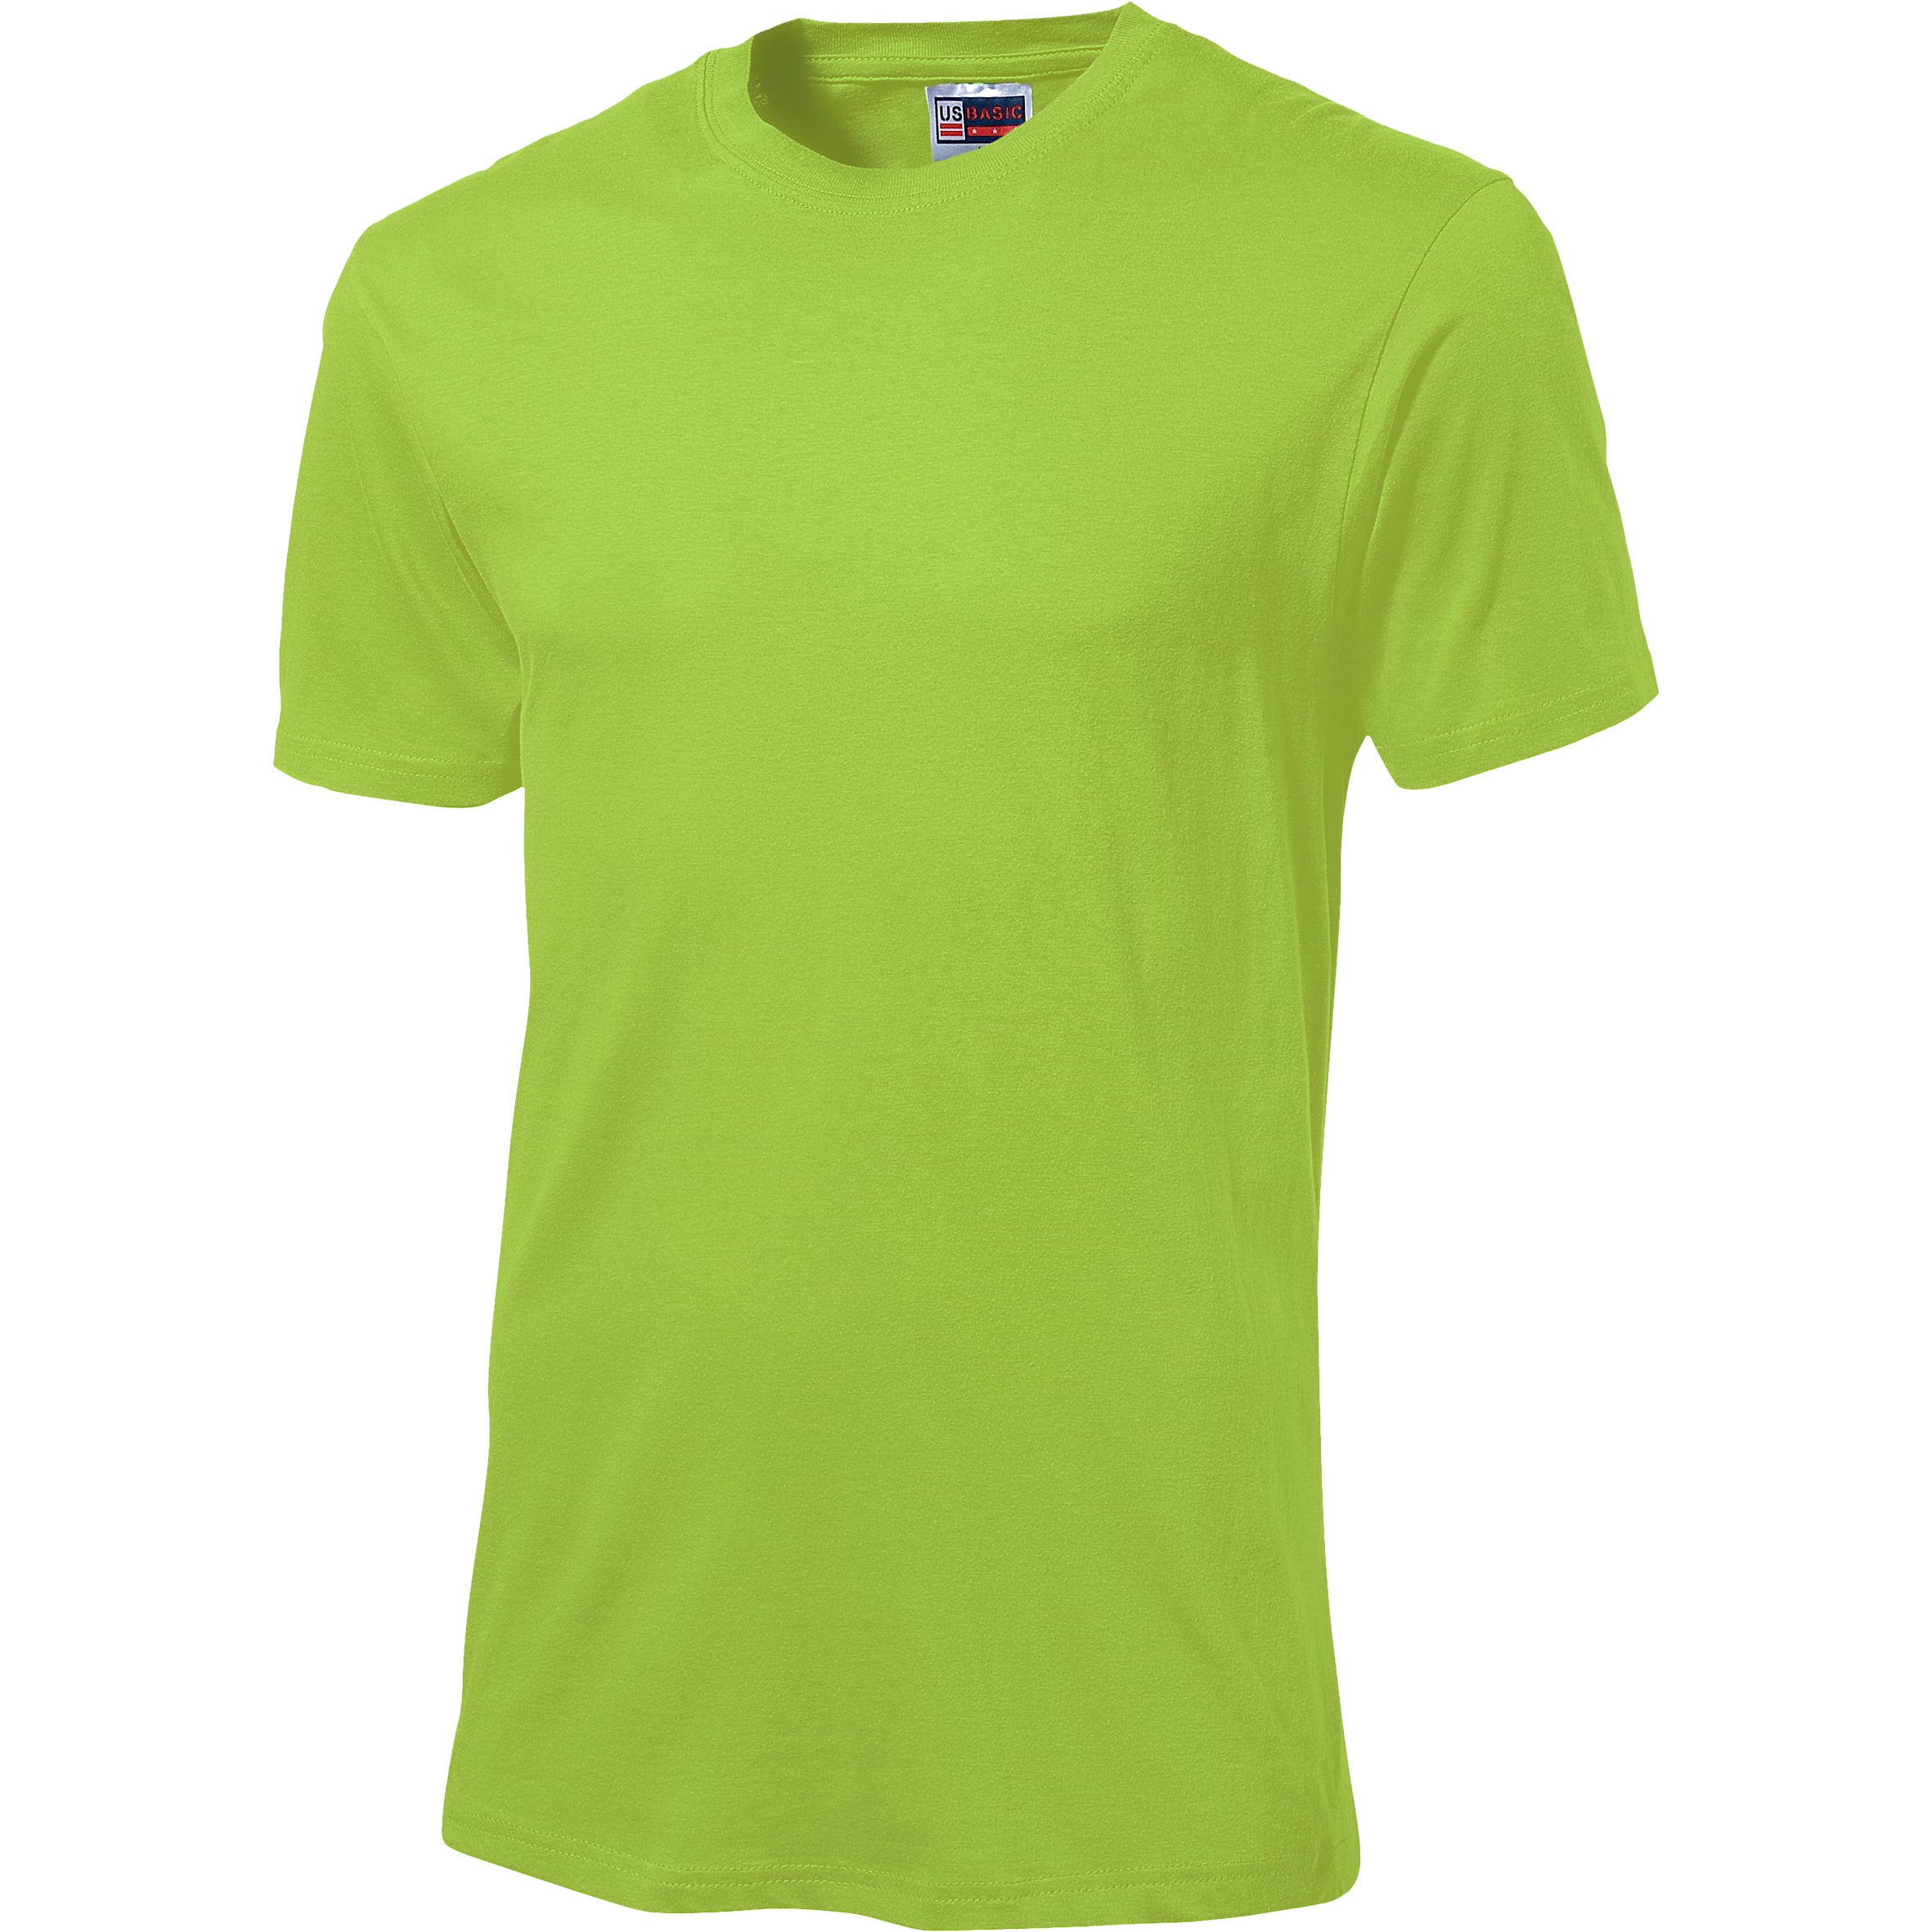 Unisex Super Club 135 T-Shirt L / Lime